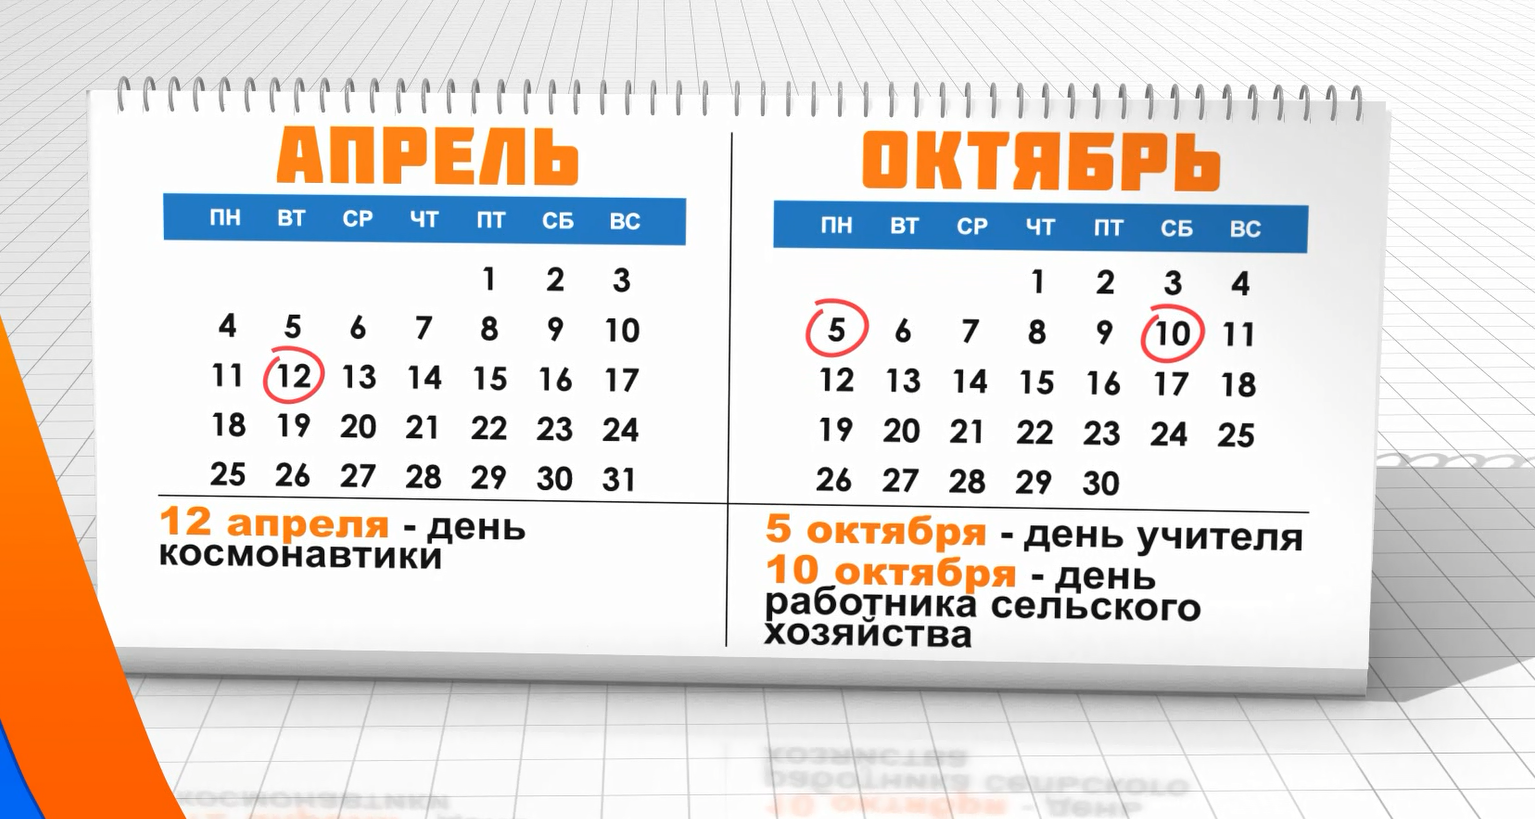 Выходные дни в татарстане в мае. Выходные дни в Татарстане. Нерабочие праздничные дни.